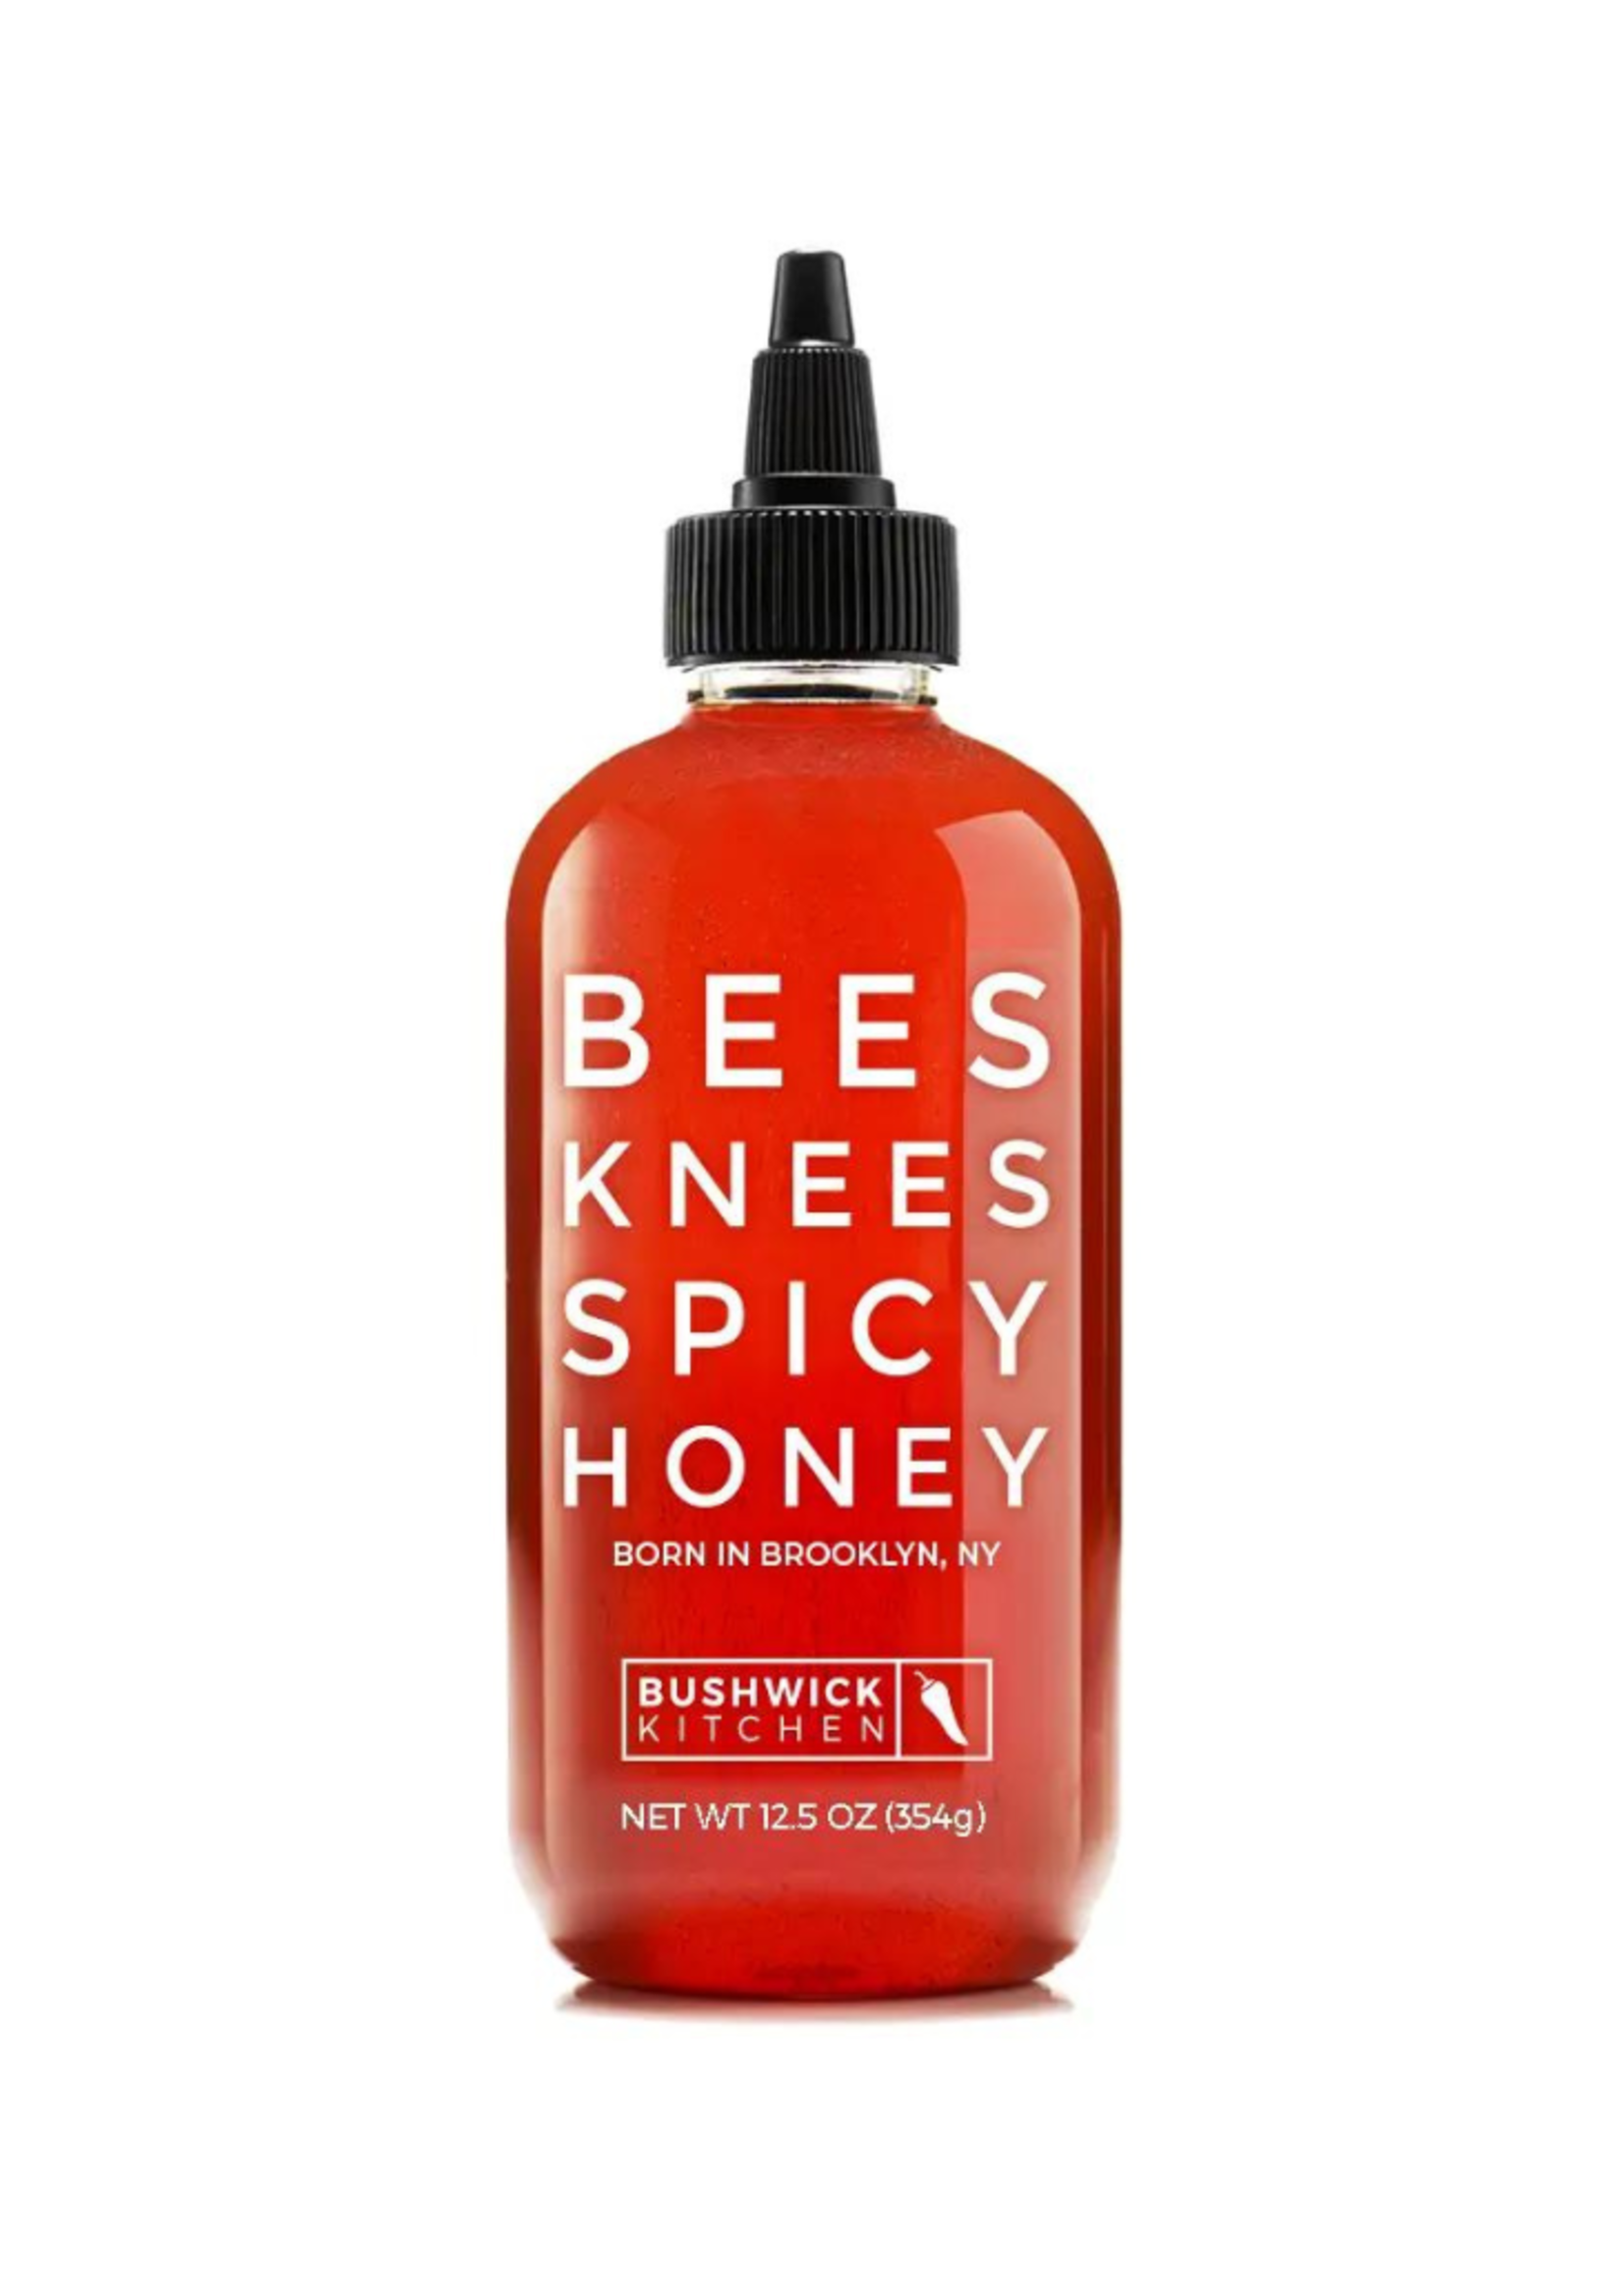 Bushwick Kitchen Bushwick Kitchen - Bees Knees Spicy Honey (Gluten Free)